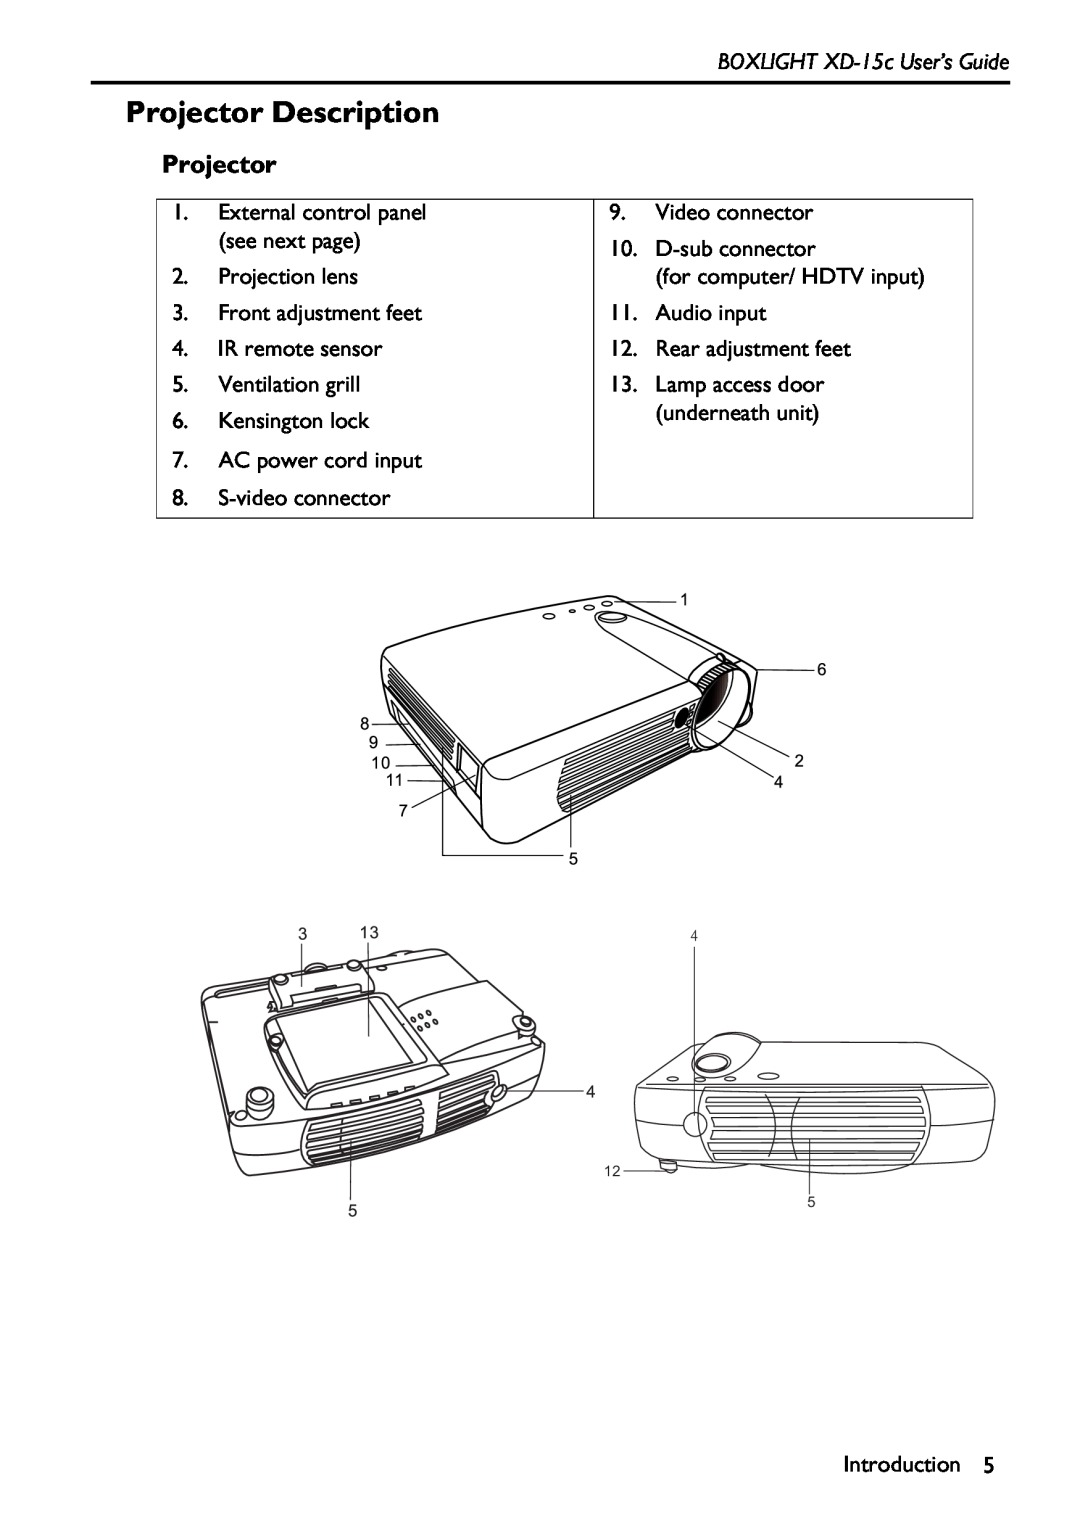 BOXLIGHT XD-15c manual Projector Description 